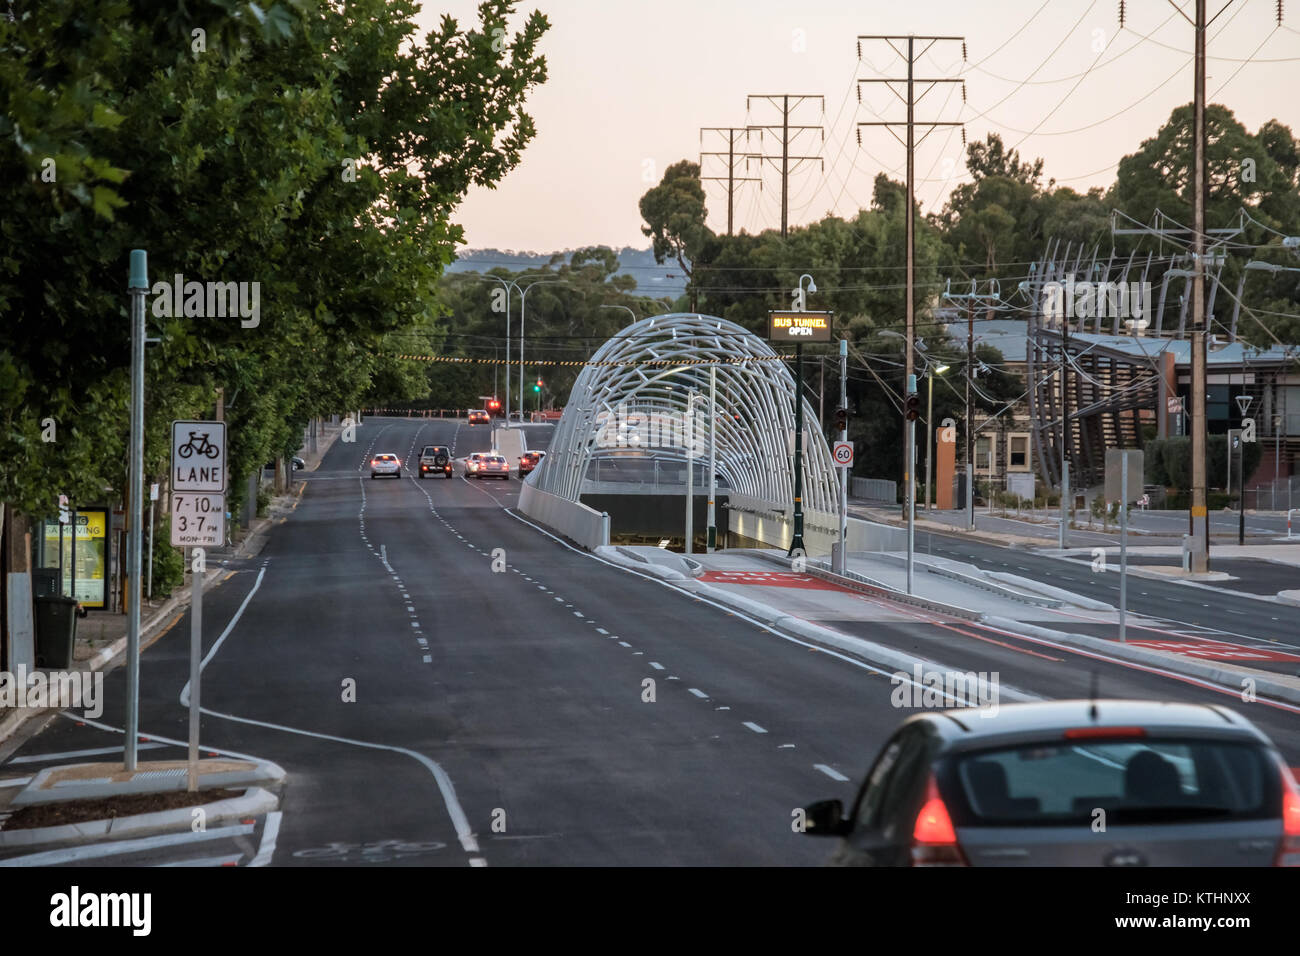 Adelaide, Australien - 25. Dezember 2017: Neue $ 160 Mio. Adelaide O-Bahn Verlängerung Tunnel Eingang mit frisch markierten Busspuren in der Princes Highway A21 v Stockfoto